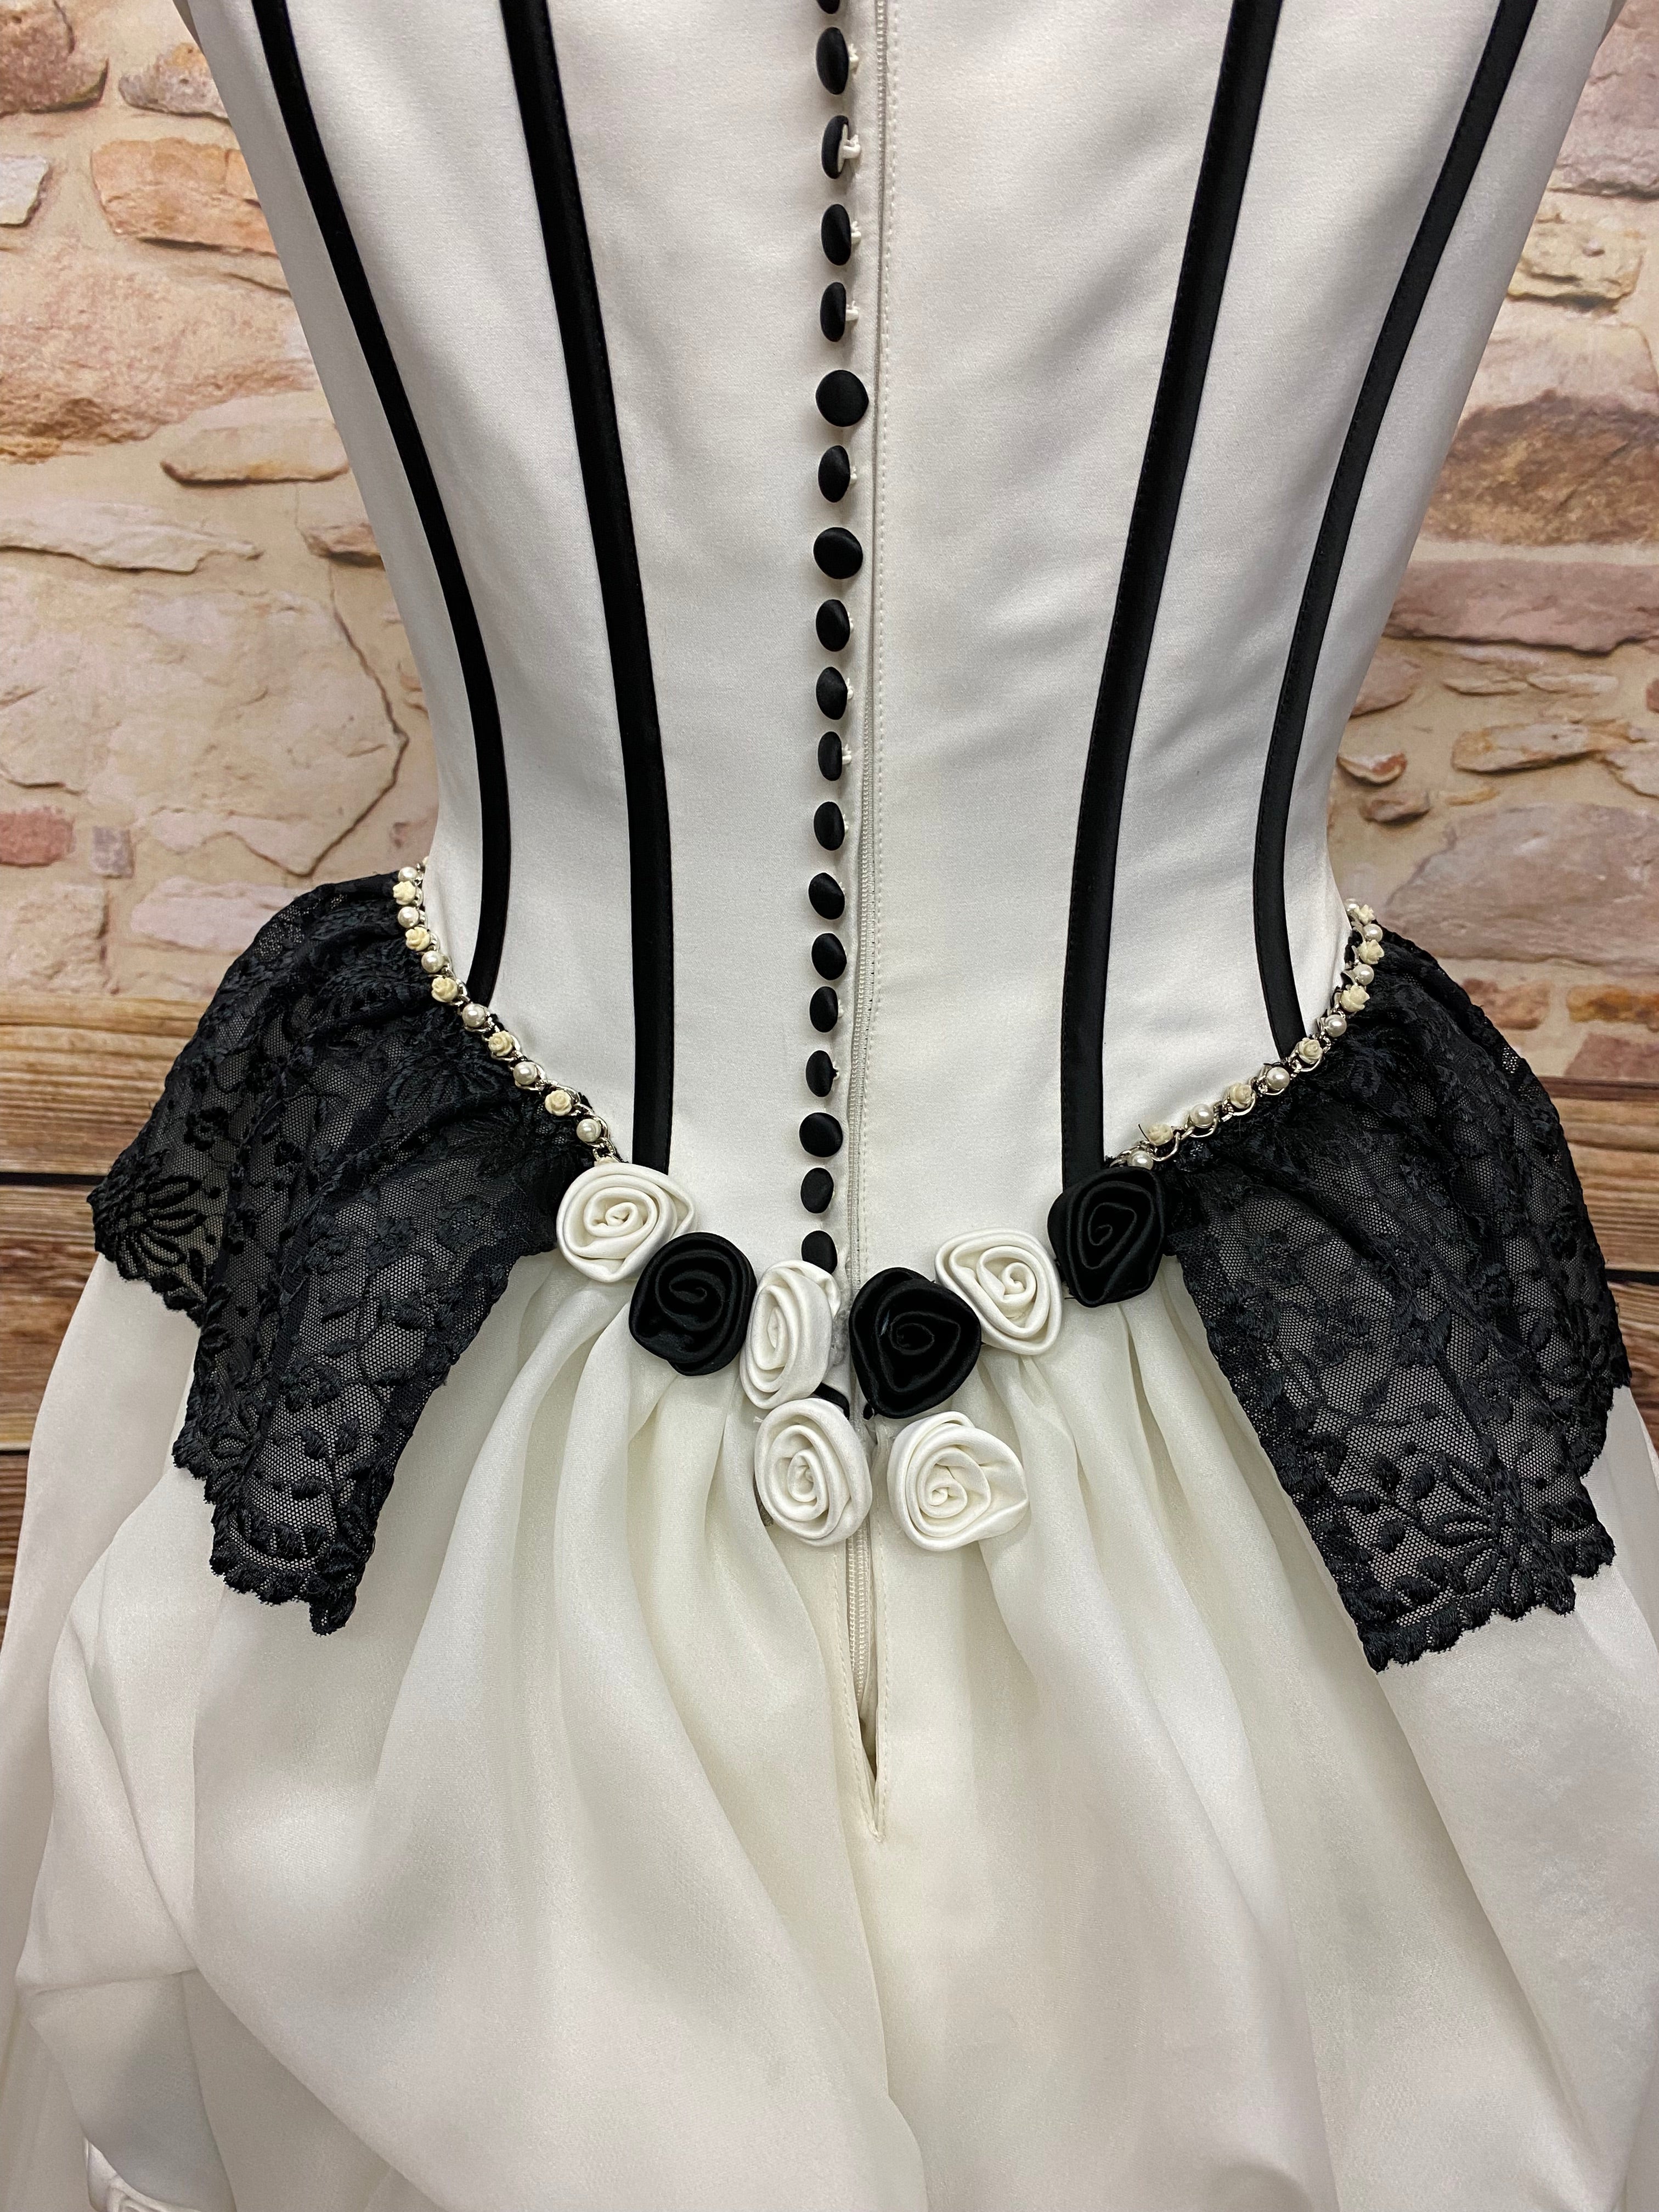 Hochwertiges Brautkleid Steampunk Vintage Rokoko Viktorianisch Hochzeitskleid Gr.38 Unikat